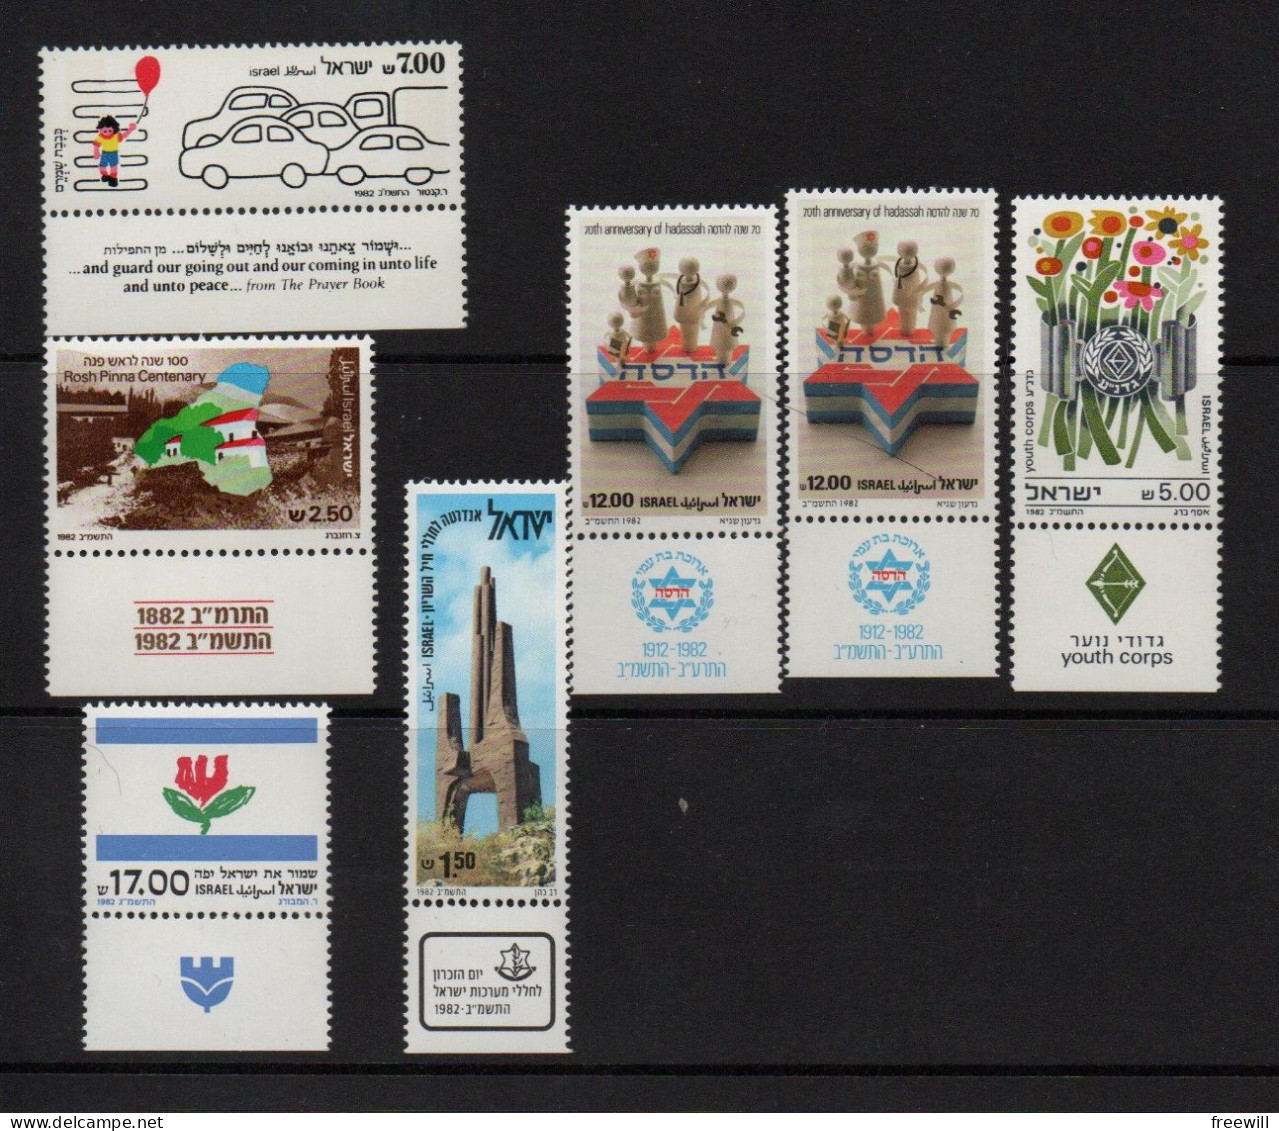 Israël   Timbres divers - Various stamps -Verschillende postzegels XXX